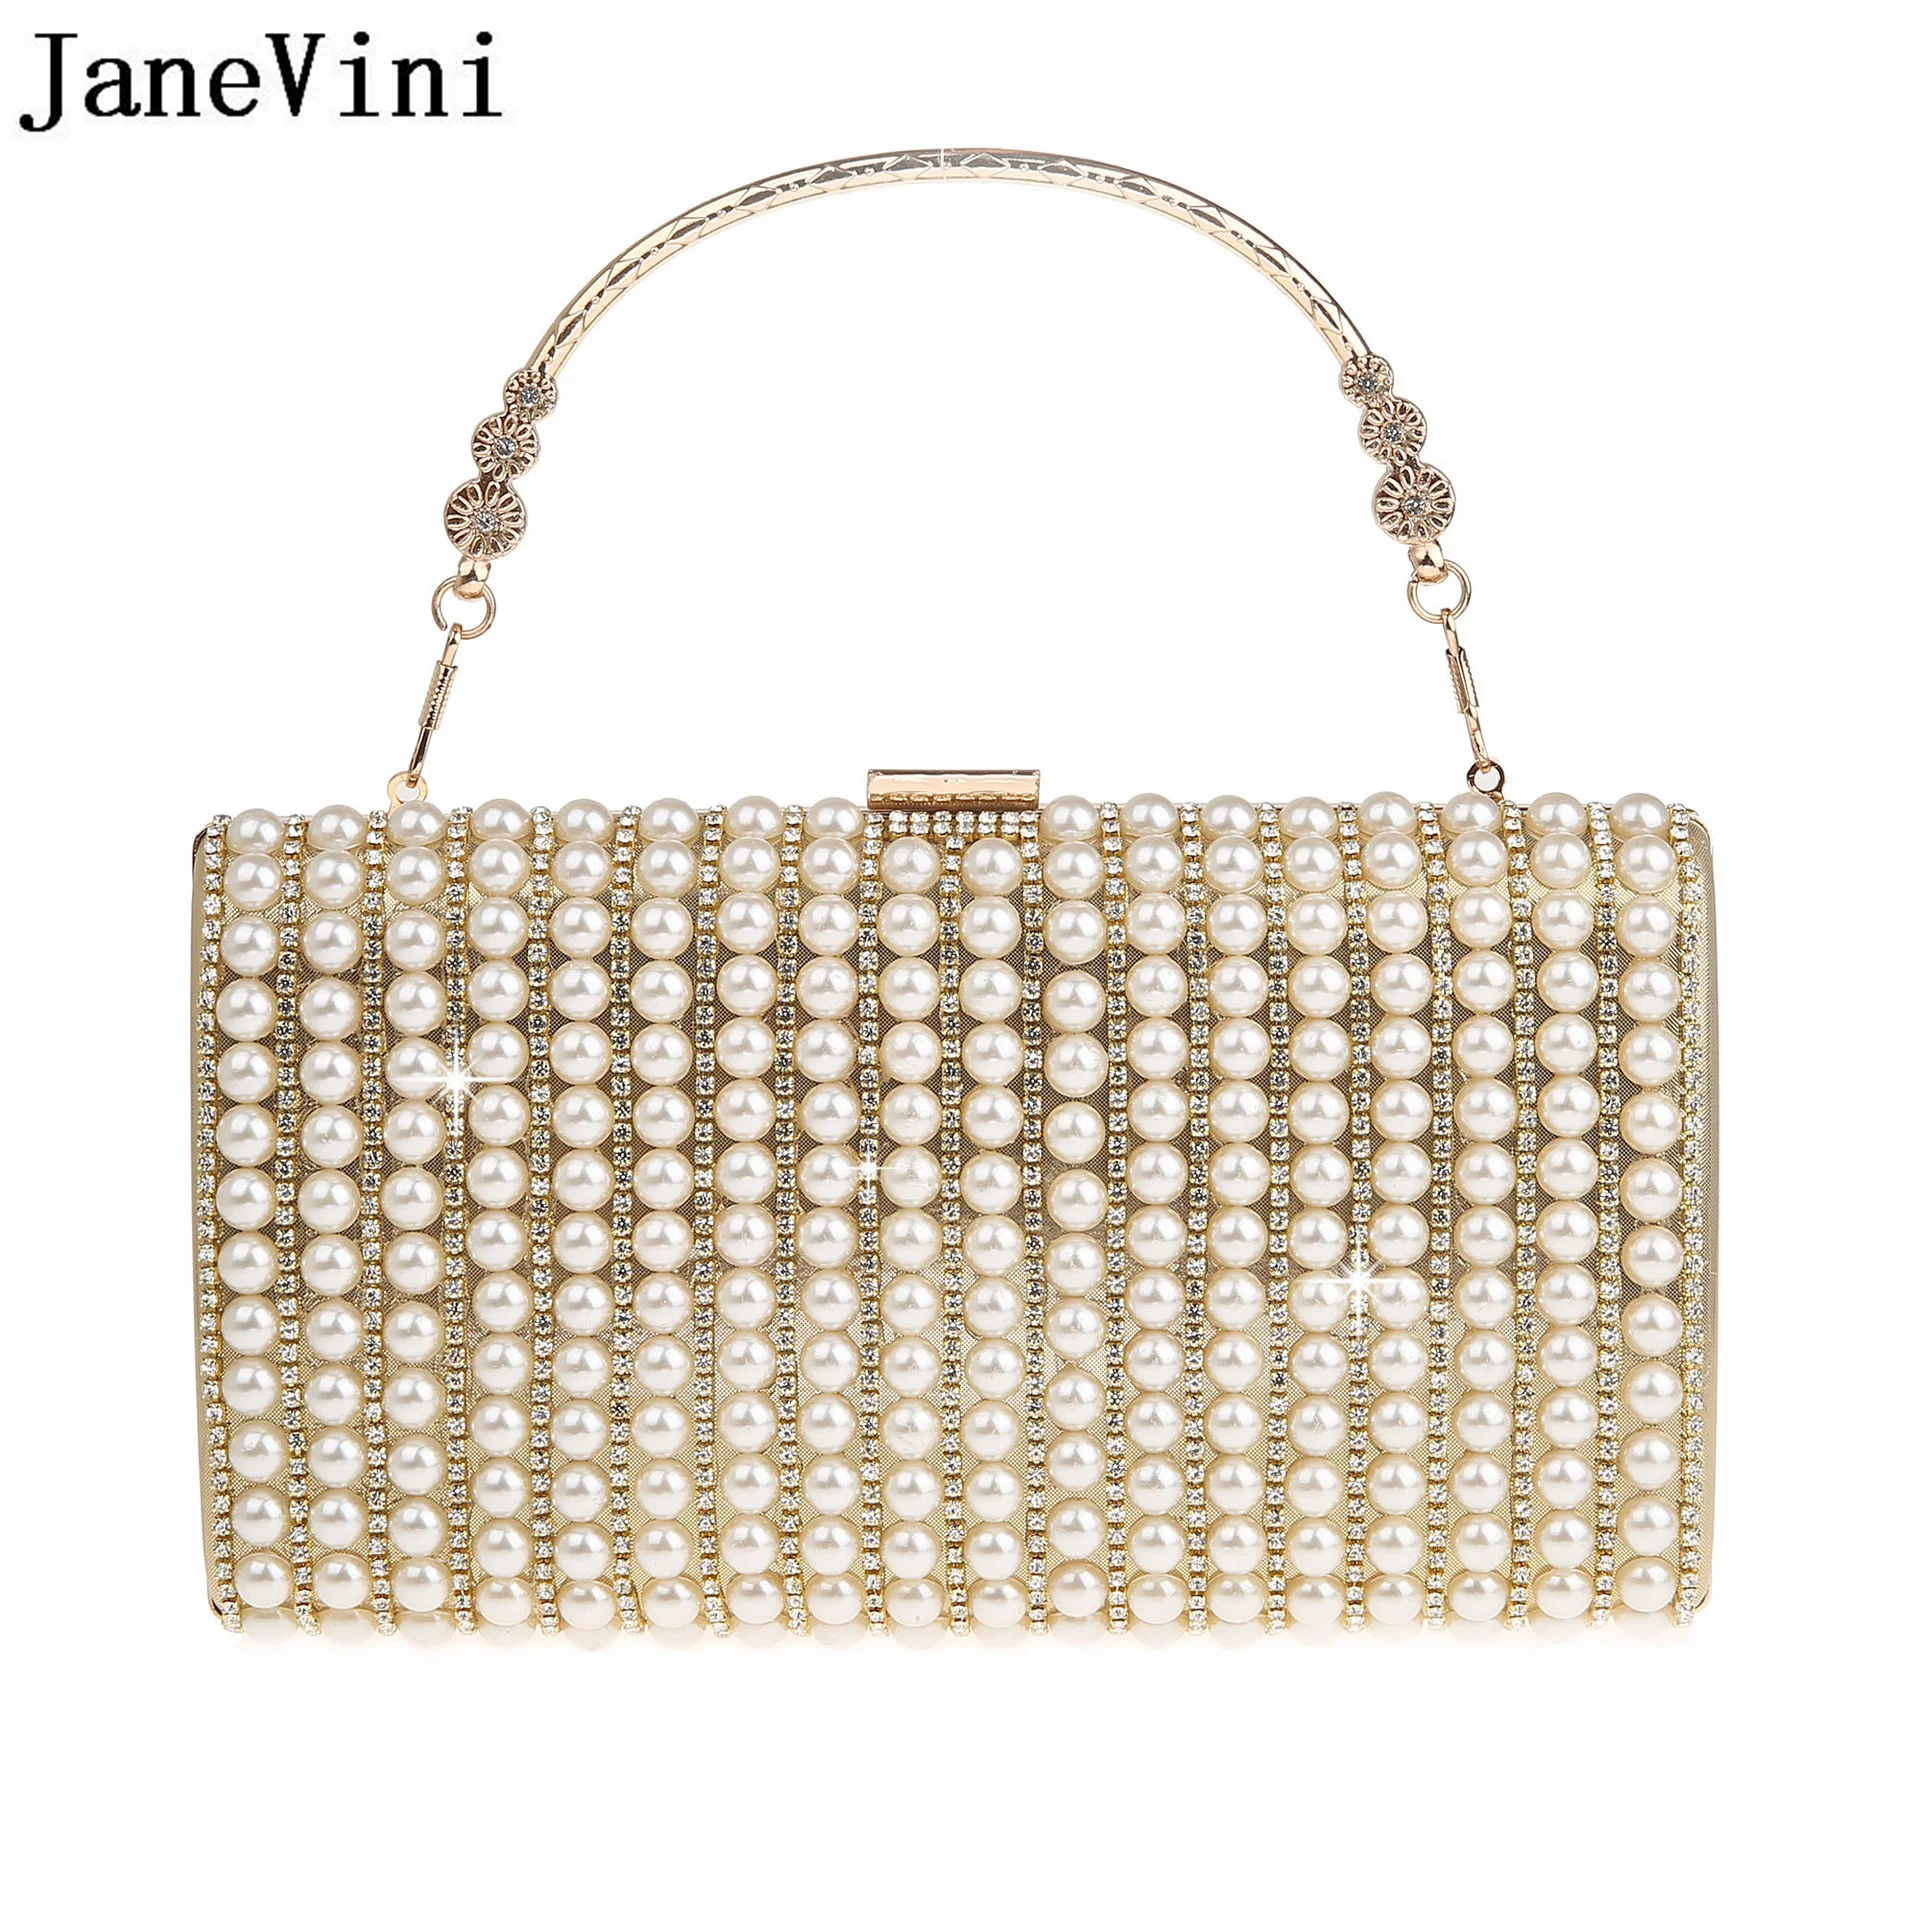 JaneVini Роскошный Клатч с кристаллами и Жемчугом, Женские свадебные сумки, сумка-мессенджер с цепочкой через плечо, Золотая квадратная сумка для Вечерней вечеринки